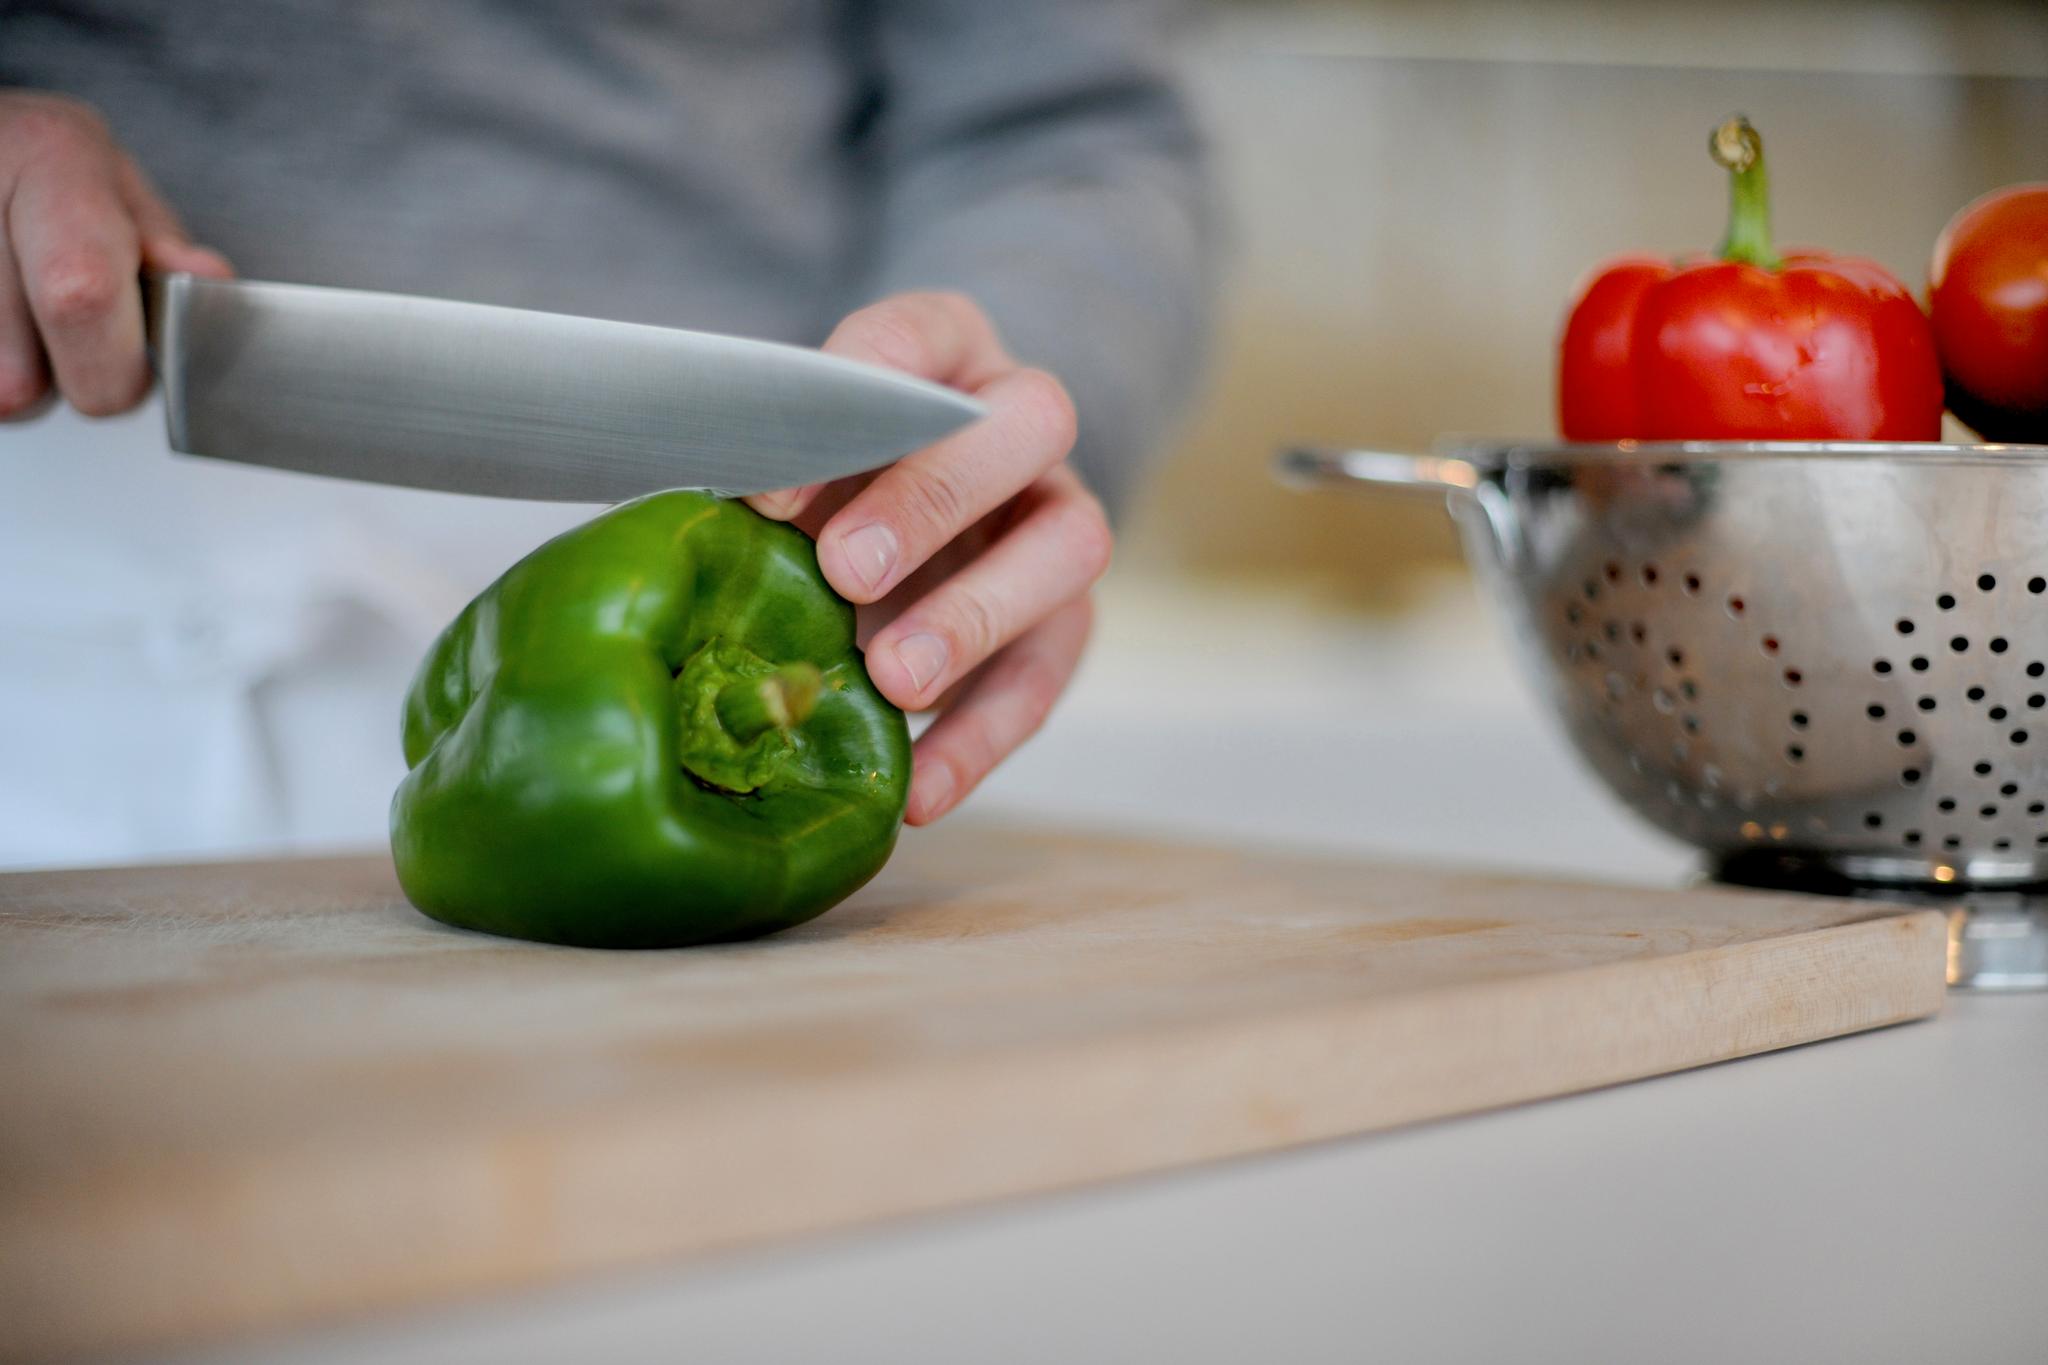 En undersøkelse om nordiske spisevaner viser at menn i større grad lager mat enn før. Foto: Frank May / NTB scanpix